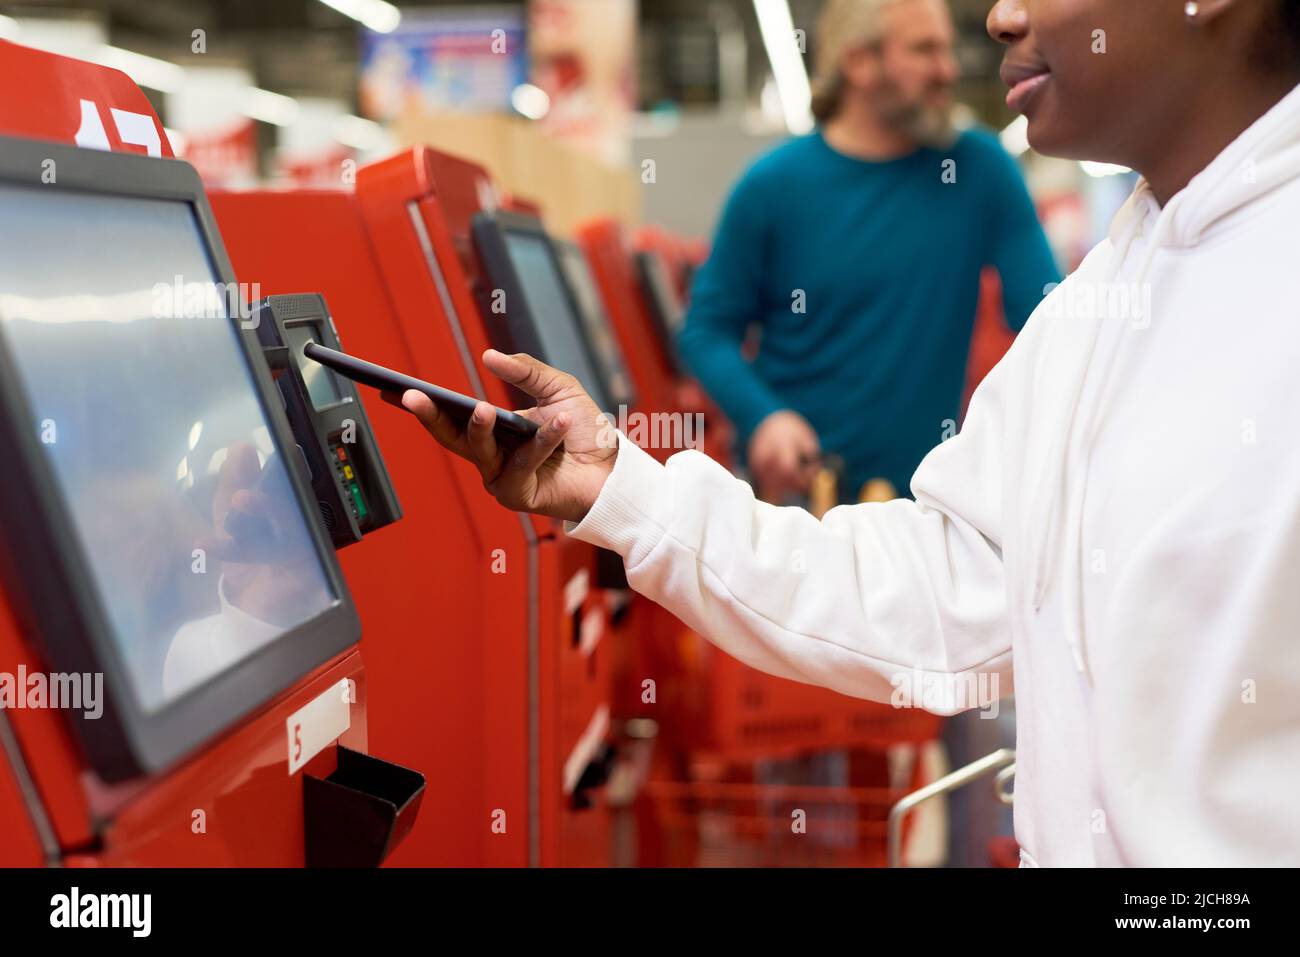 Junge schwarze Frau mit Smartphone, die kontaktlos per Terminal für Self-Service bezahlt, während sie für Lebensmittel im Supermarkt bezahlt Stockfoto